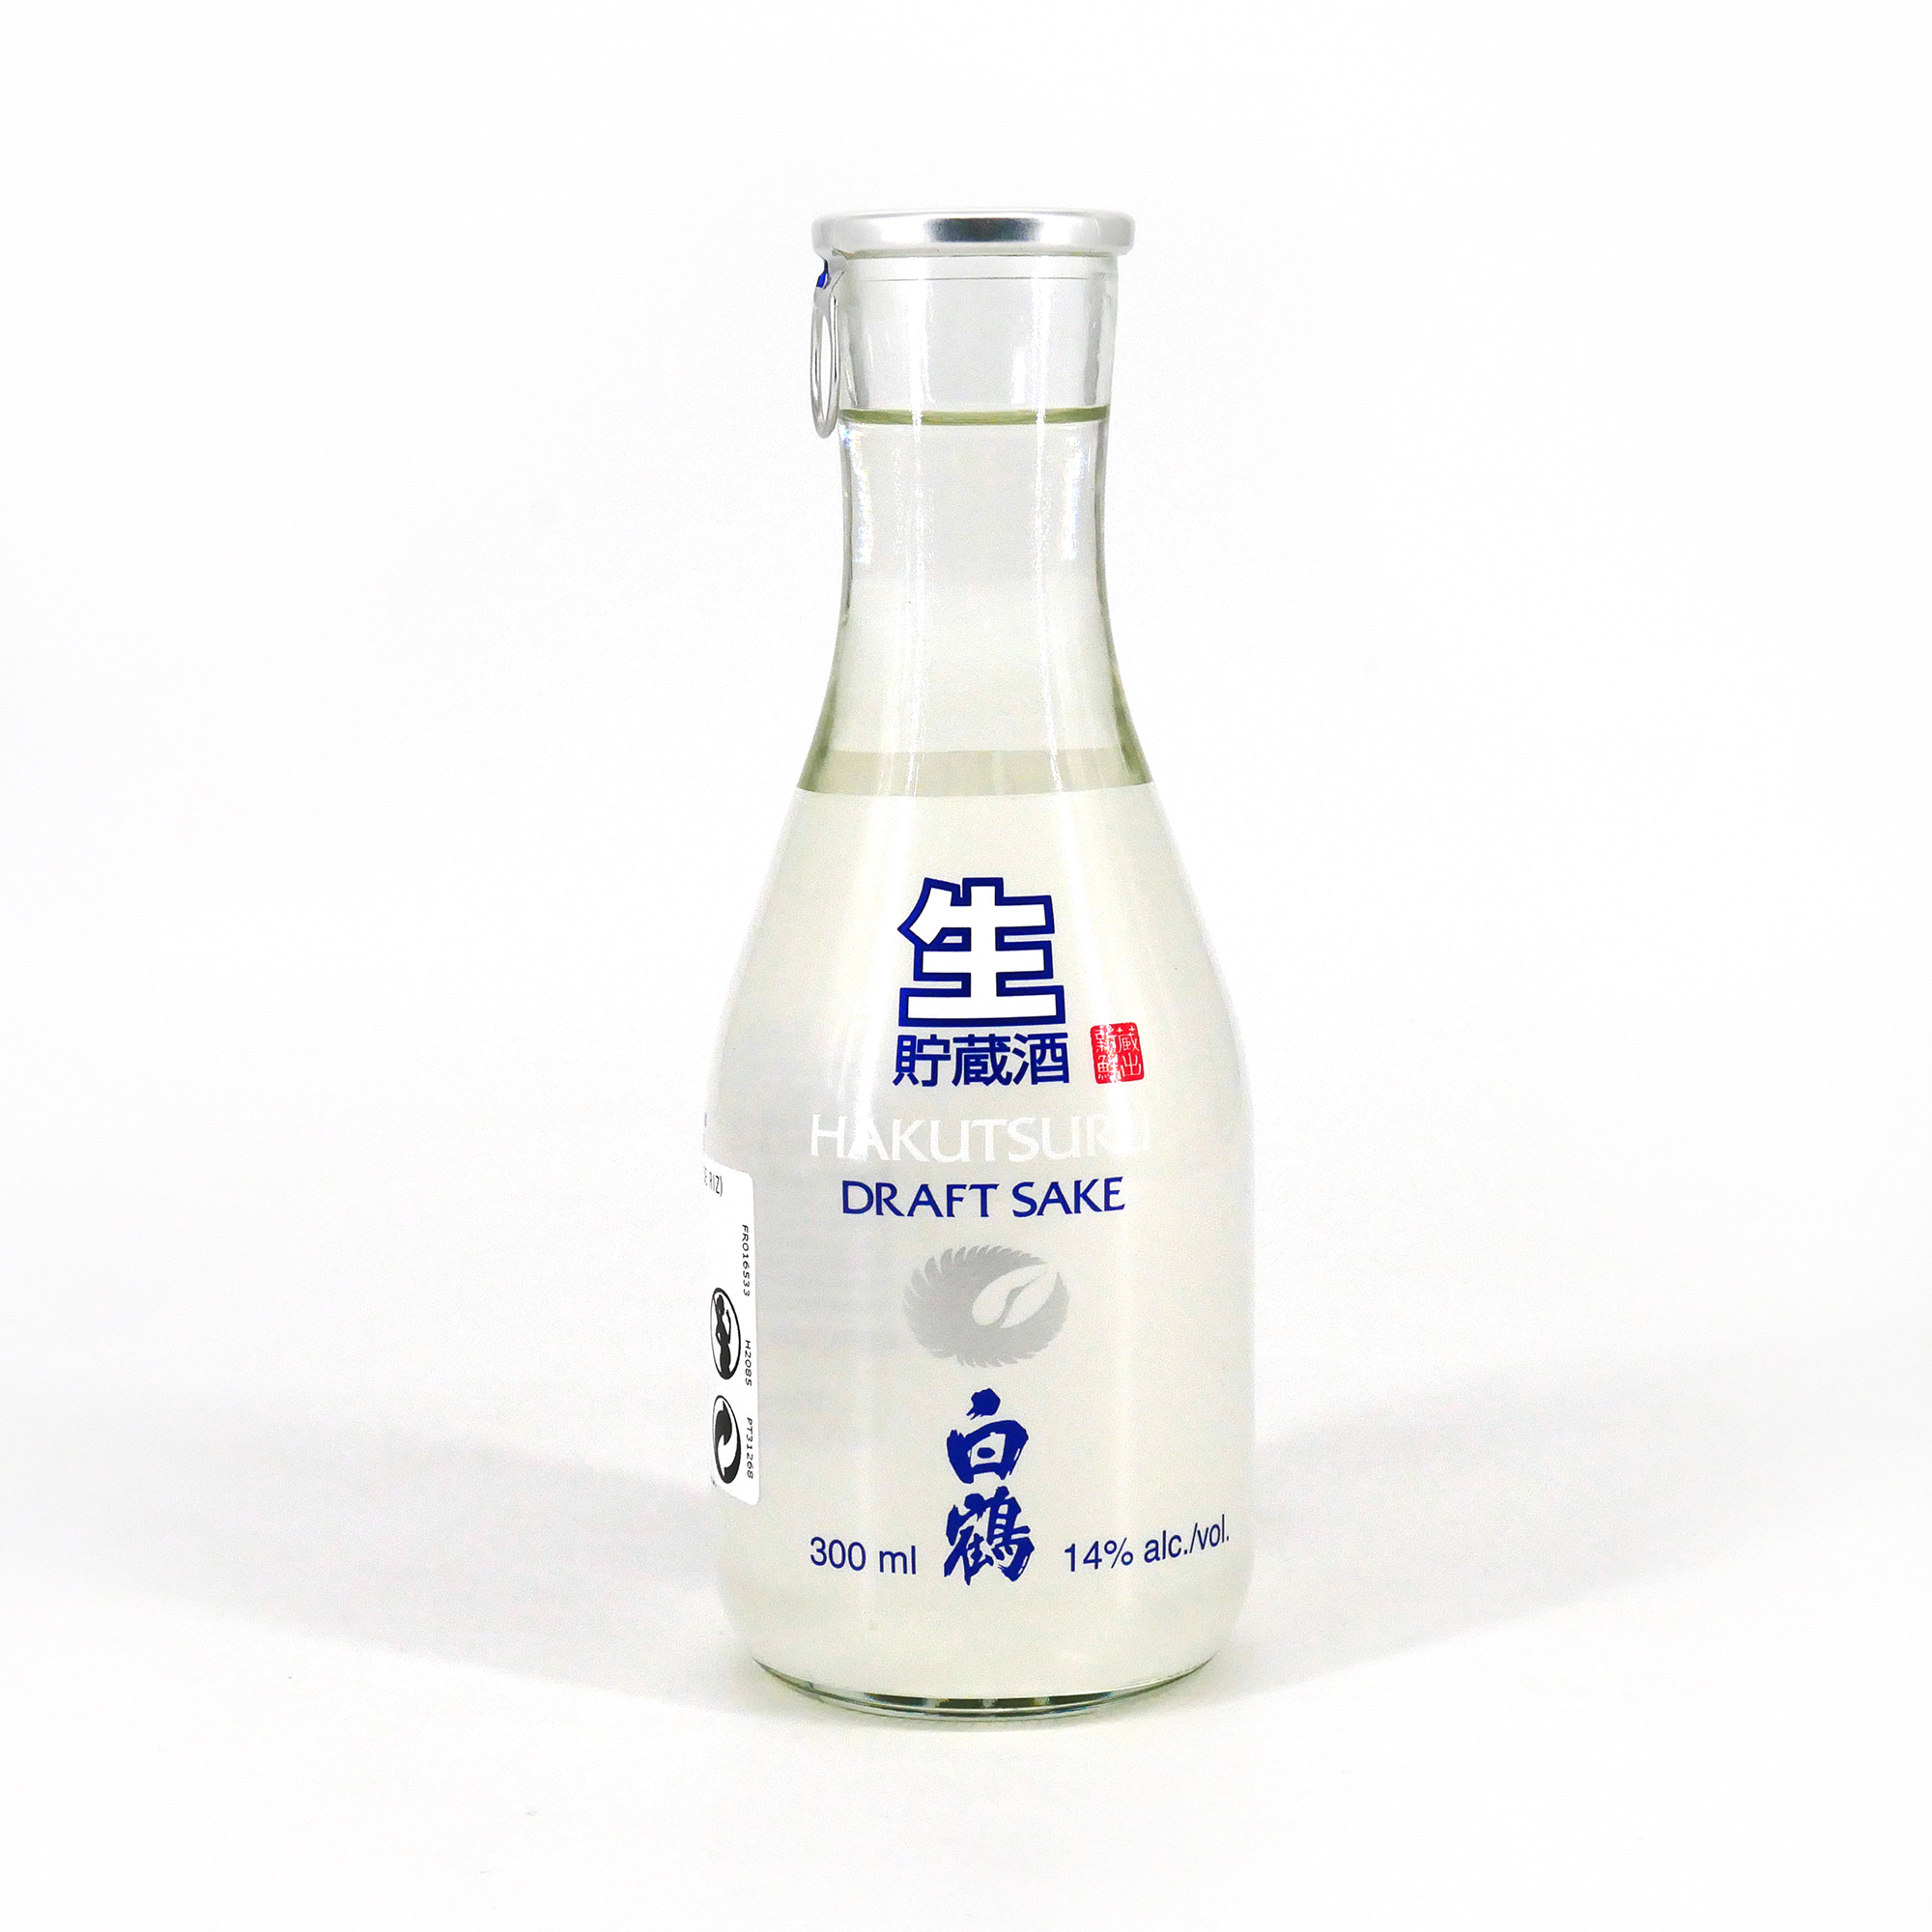 Le saké japonais, dans sa version raffinée, s'installe en France